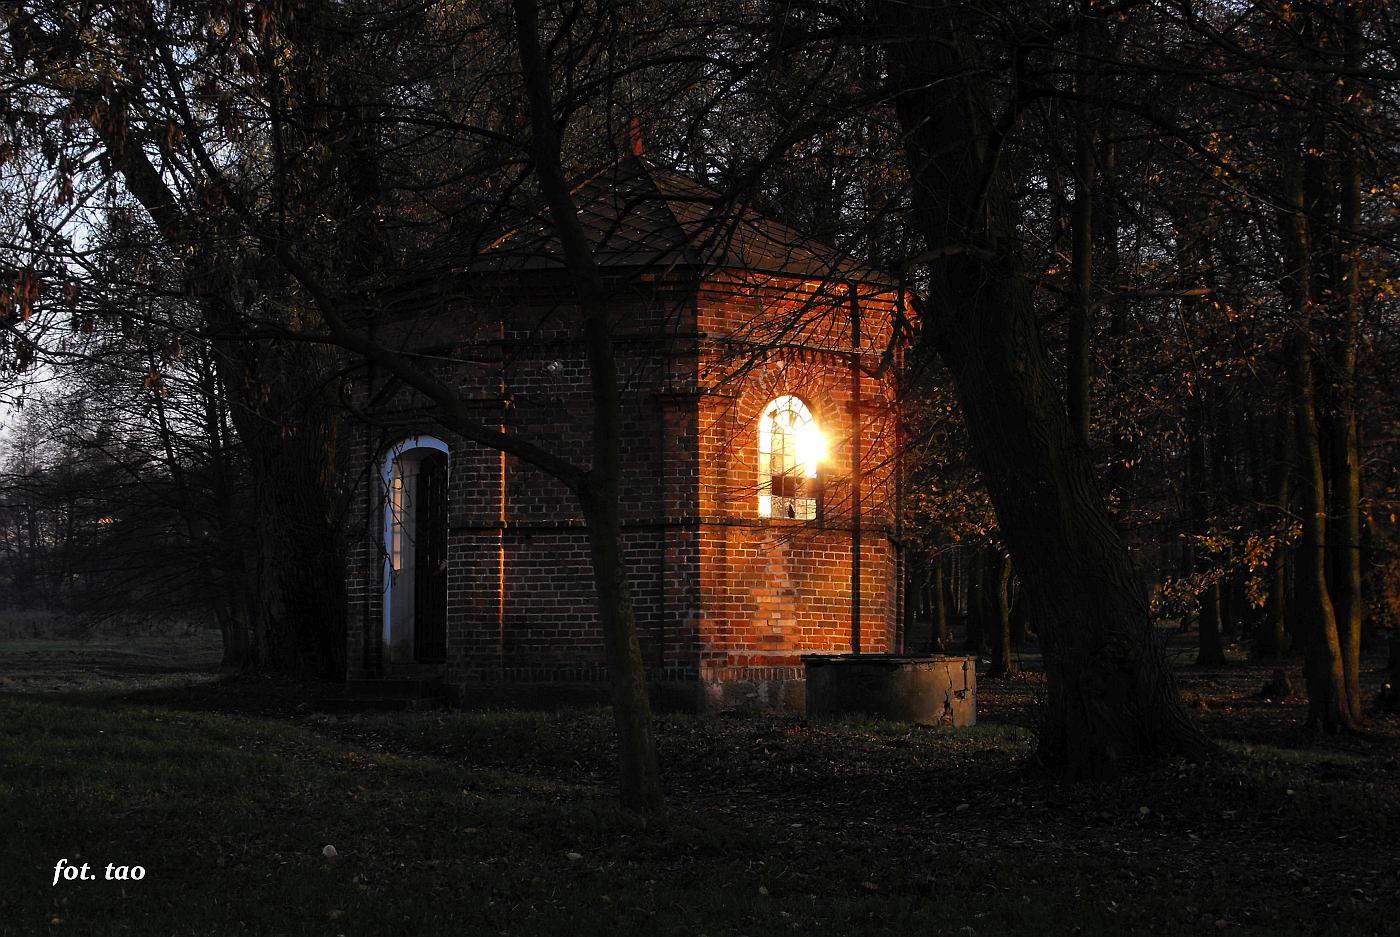 Kaplica Studzianka w zachodzcym listopadowym socu, 2008 r.